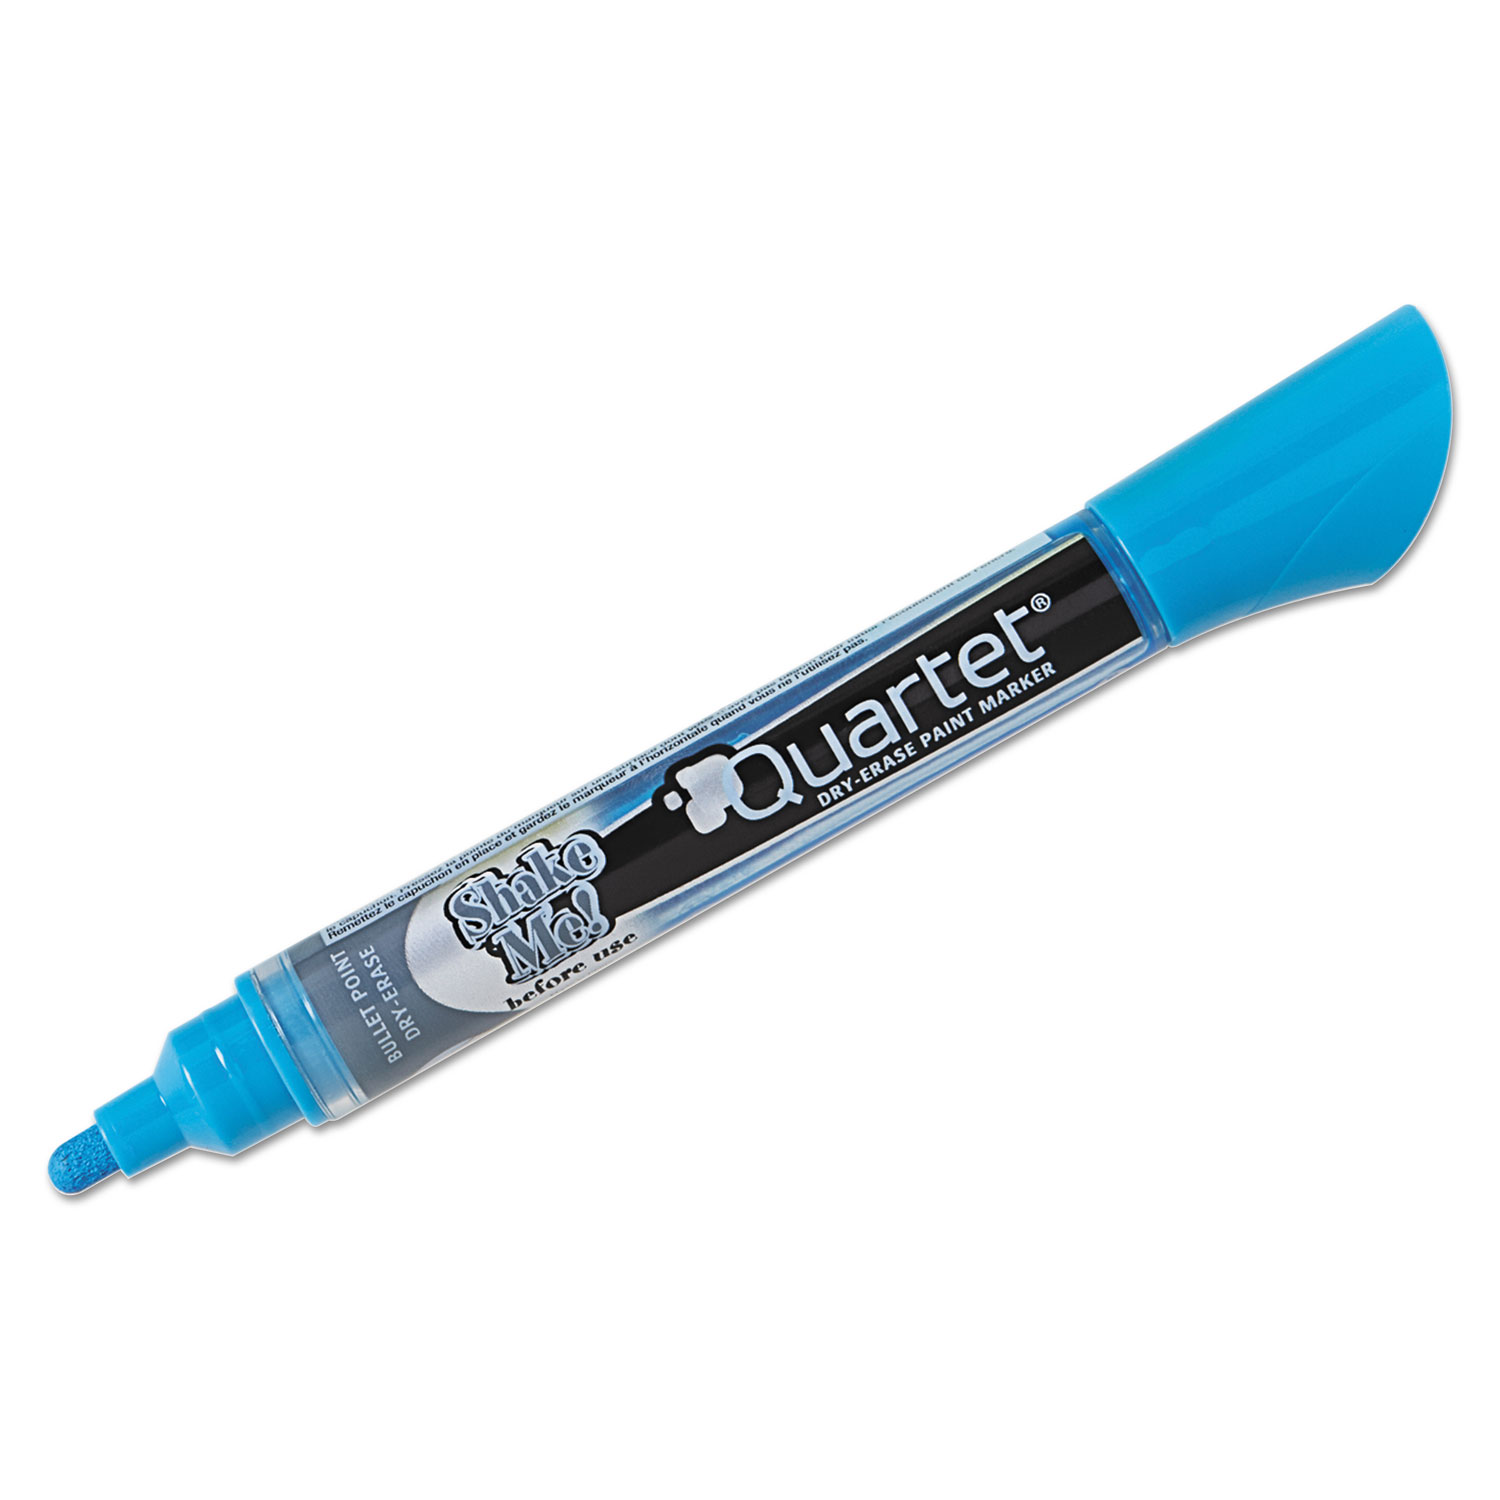 Neon Dry Erase Marker Set, Broad Bullet Tip, Assorted Colors, 4/Set - Zerbee